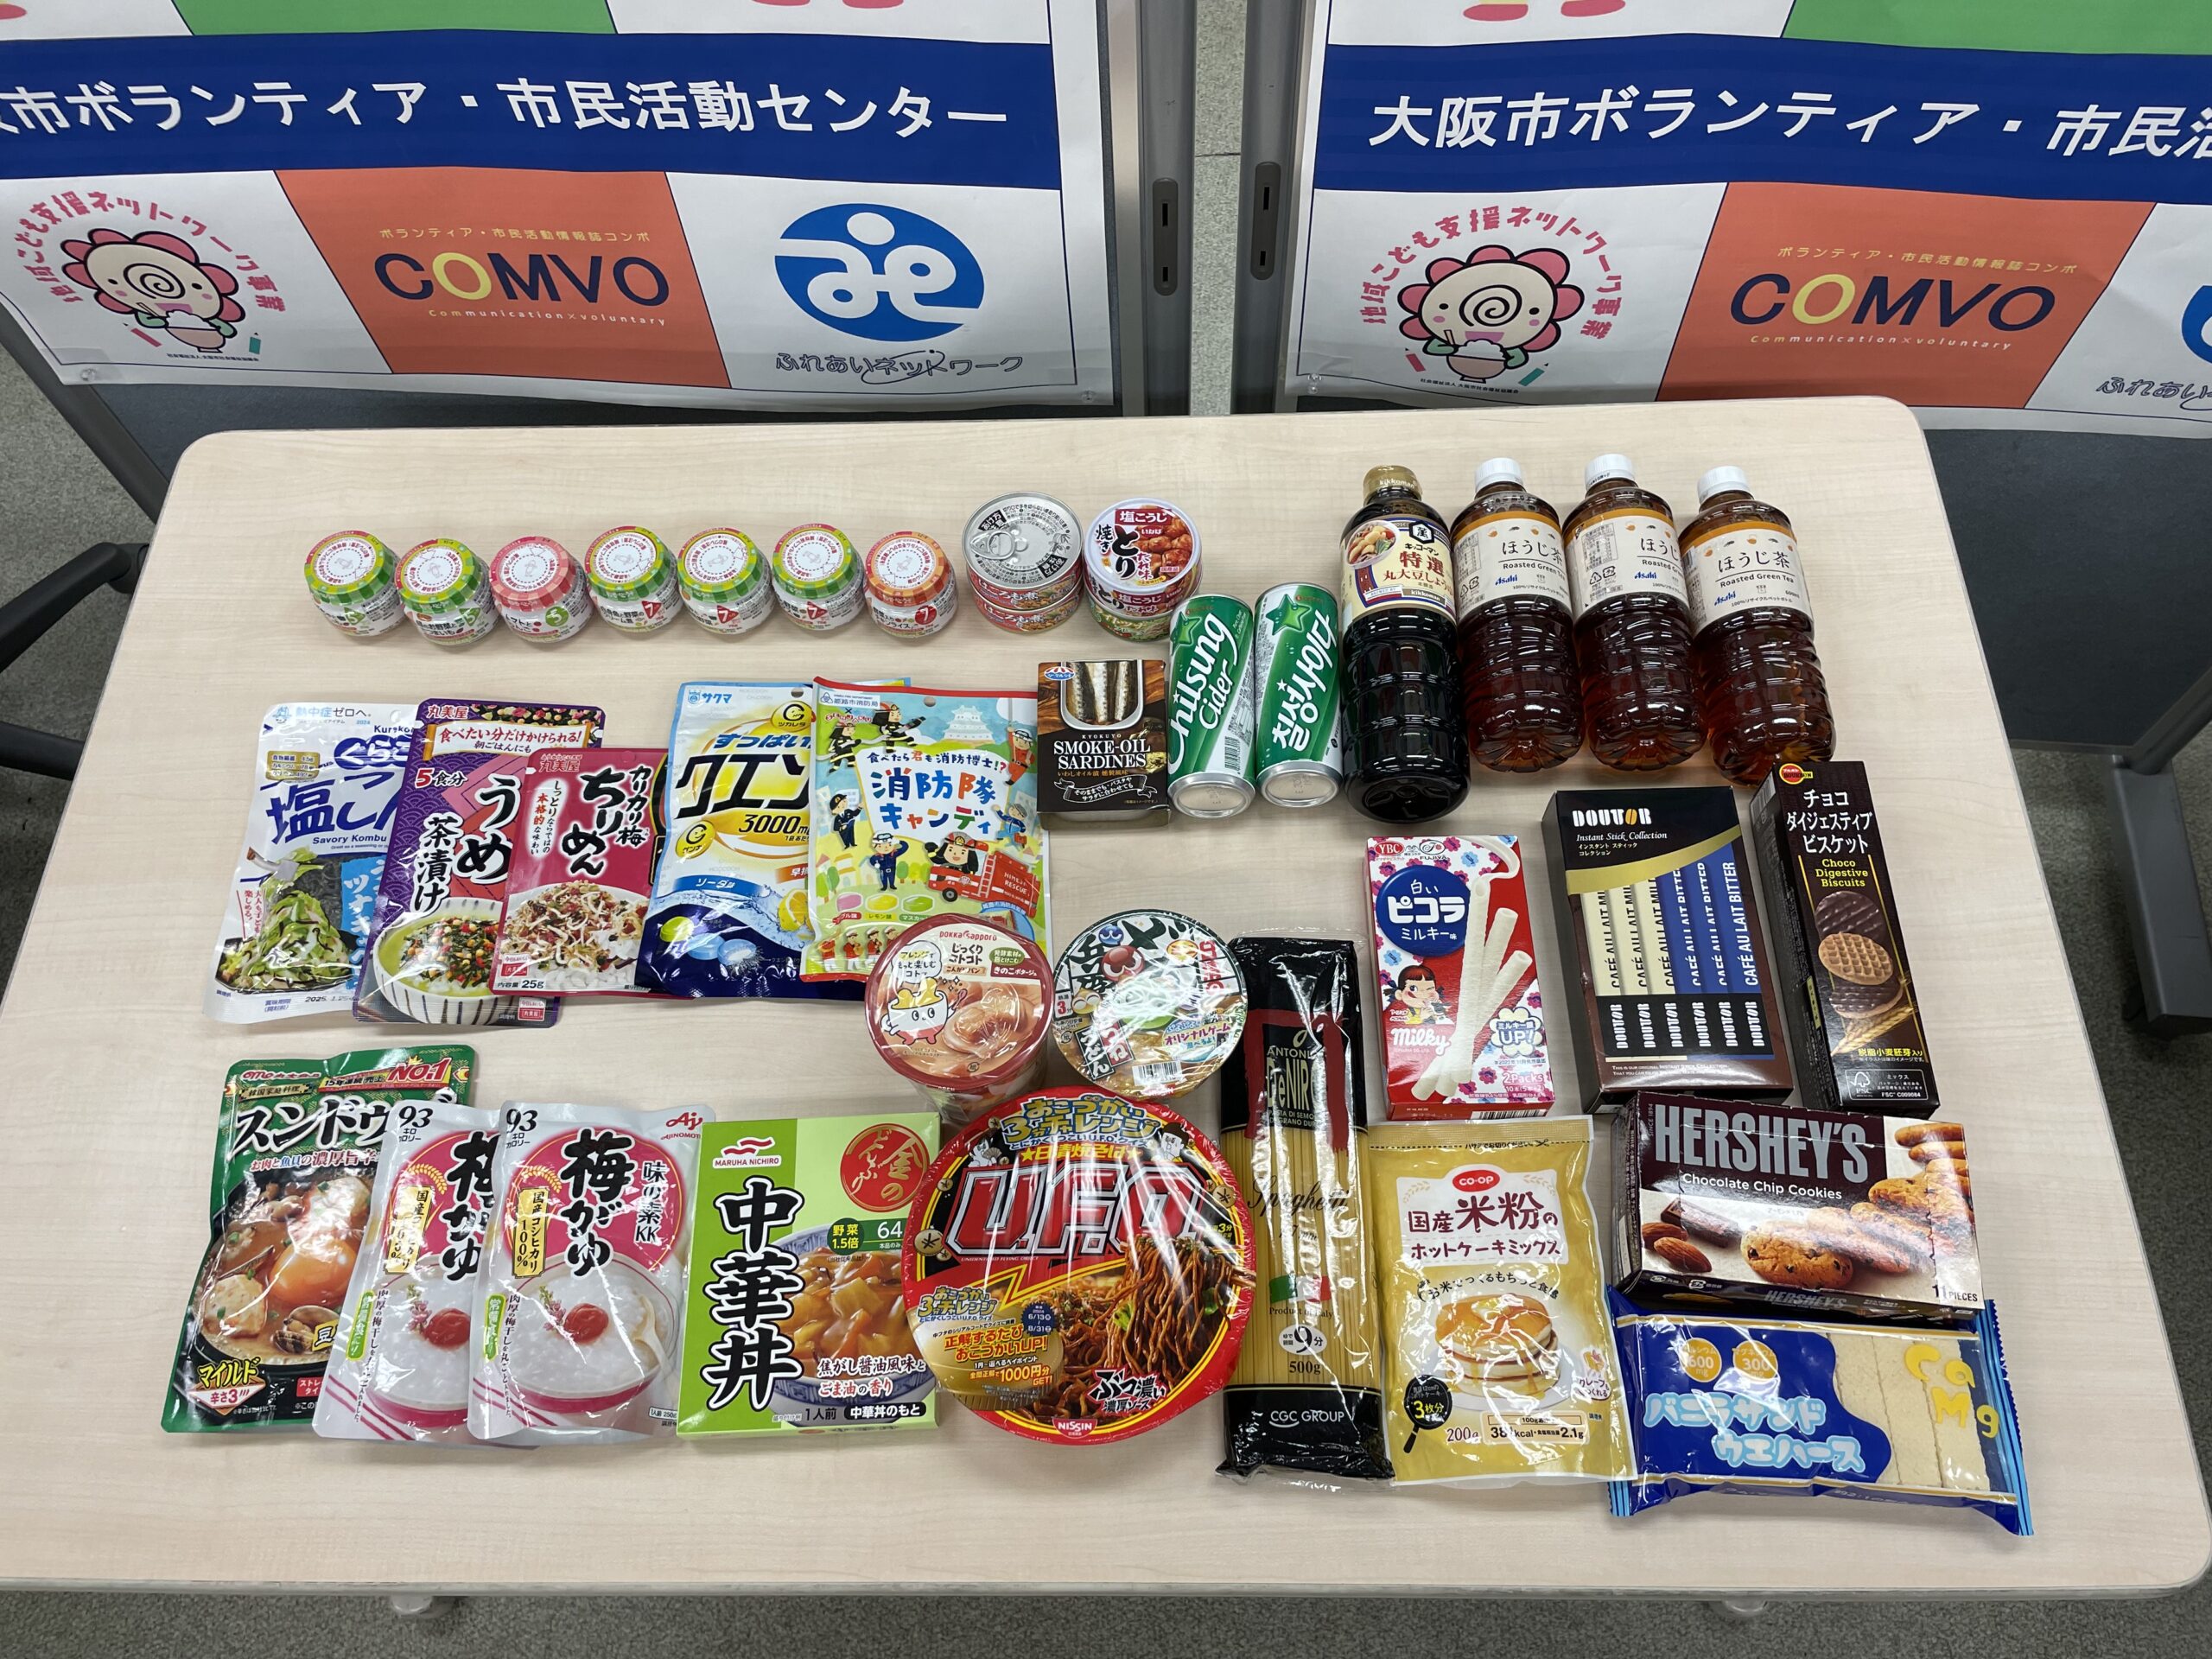 日本信号 株式会社 大阪支社から食品類を提供いただきました